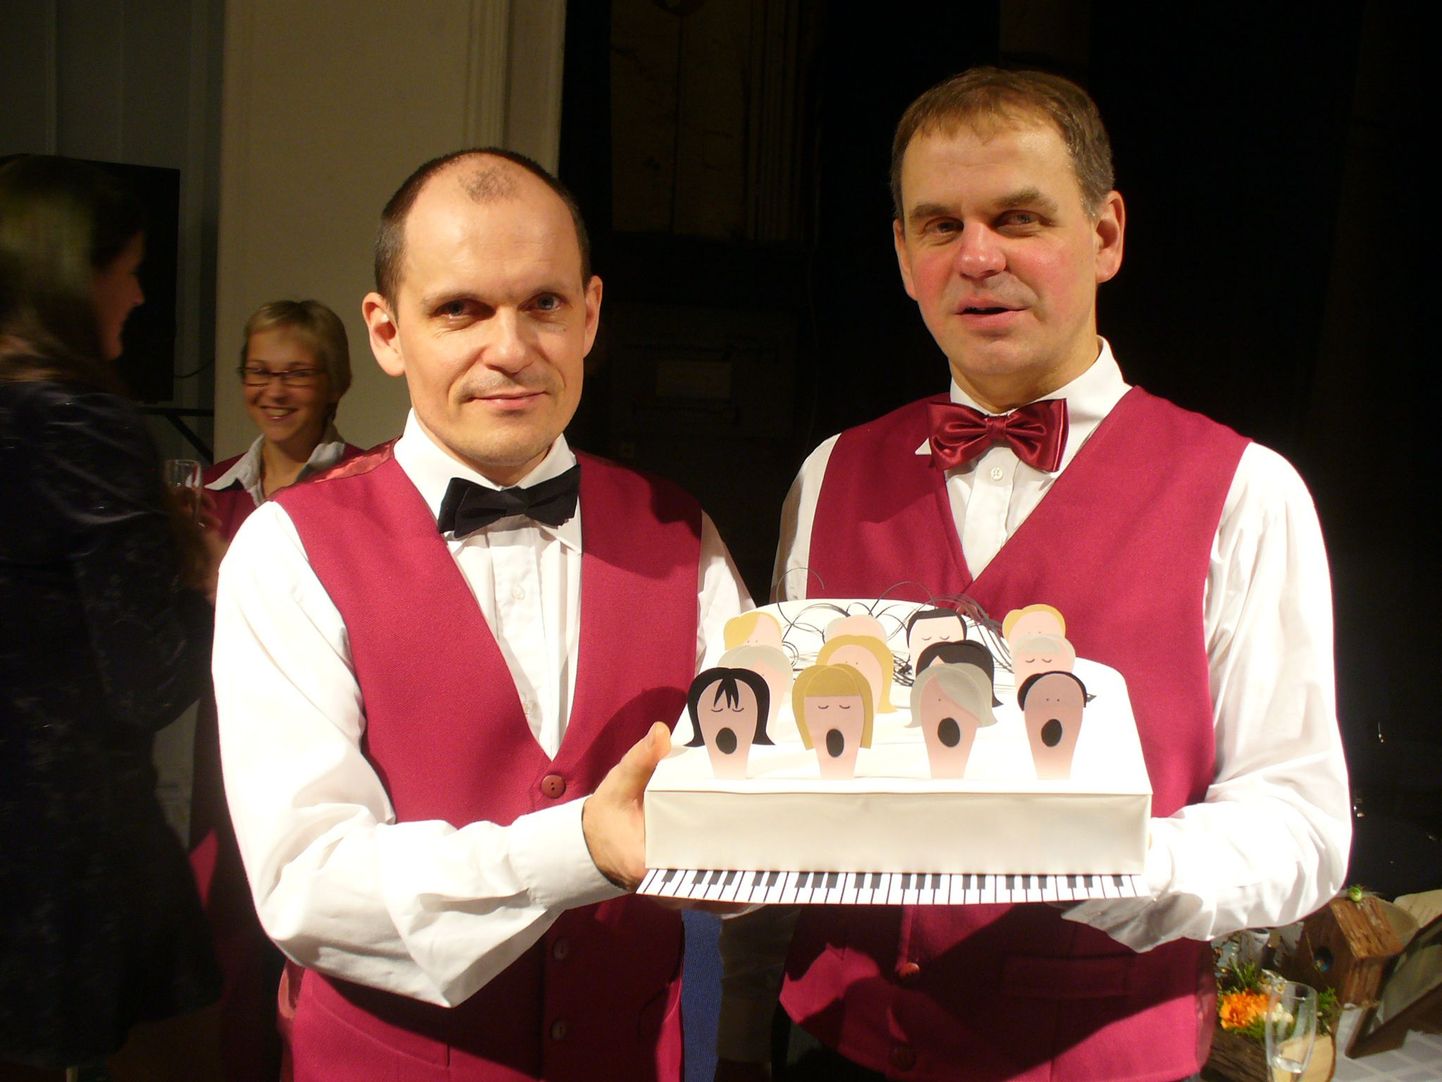 Pühajärve põhikool kinkis Eveko koorile valge kontsertklaveri. Kingitusega Kuno Oja (vasakul) ja koori vanem Ain Kruusmaa